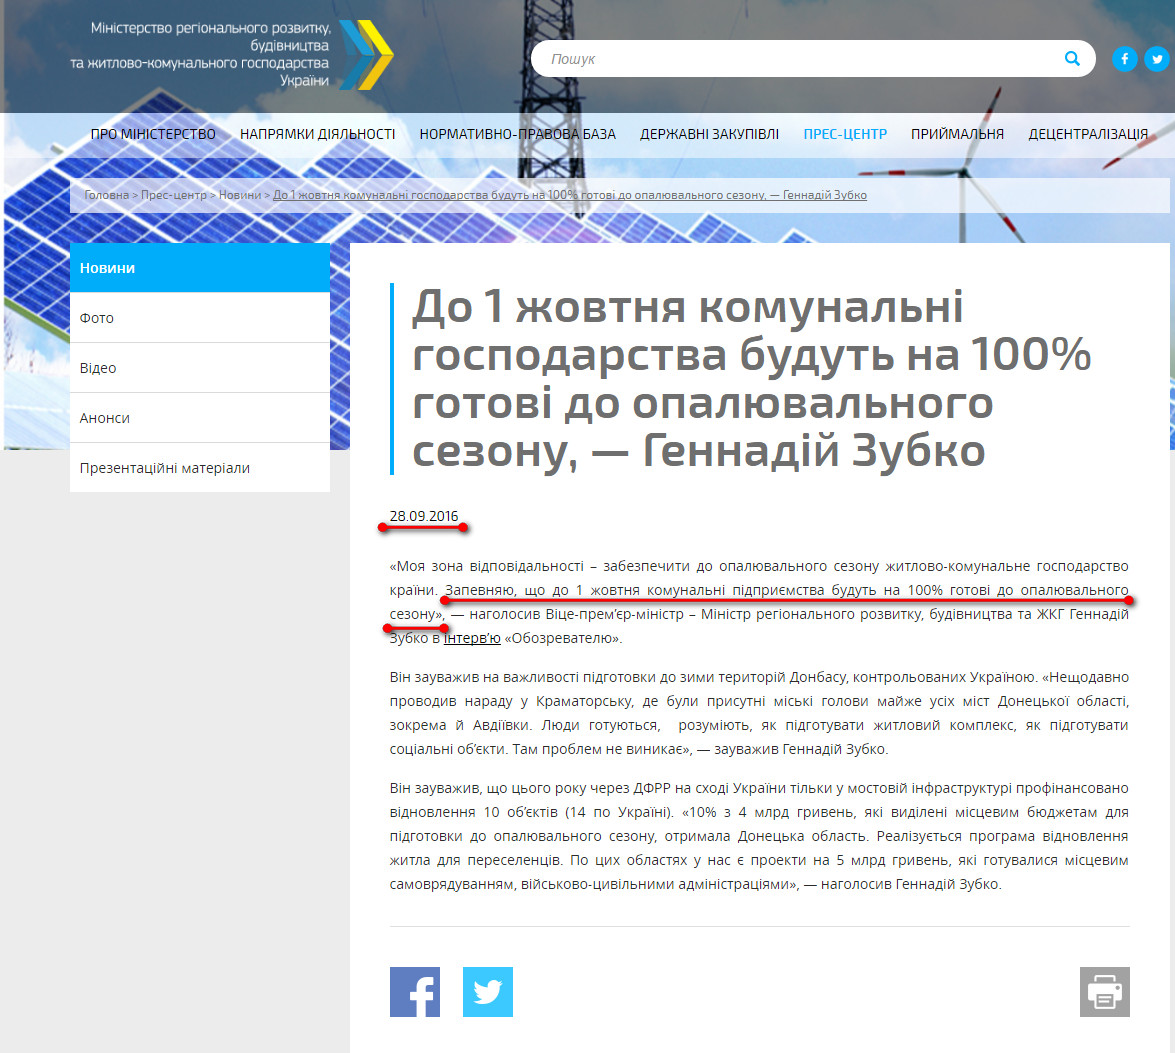 http://www.minregion.gov.ua/press/news/do-1-zhovtnya-komunalni-gospodarstva-budut-na-100-gotovi-do-opalyuvalnogo-sezonu-gennadiy-zubko/